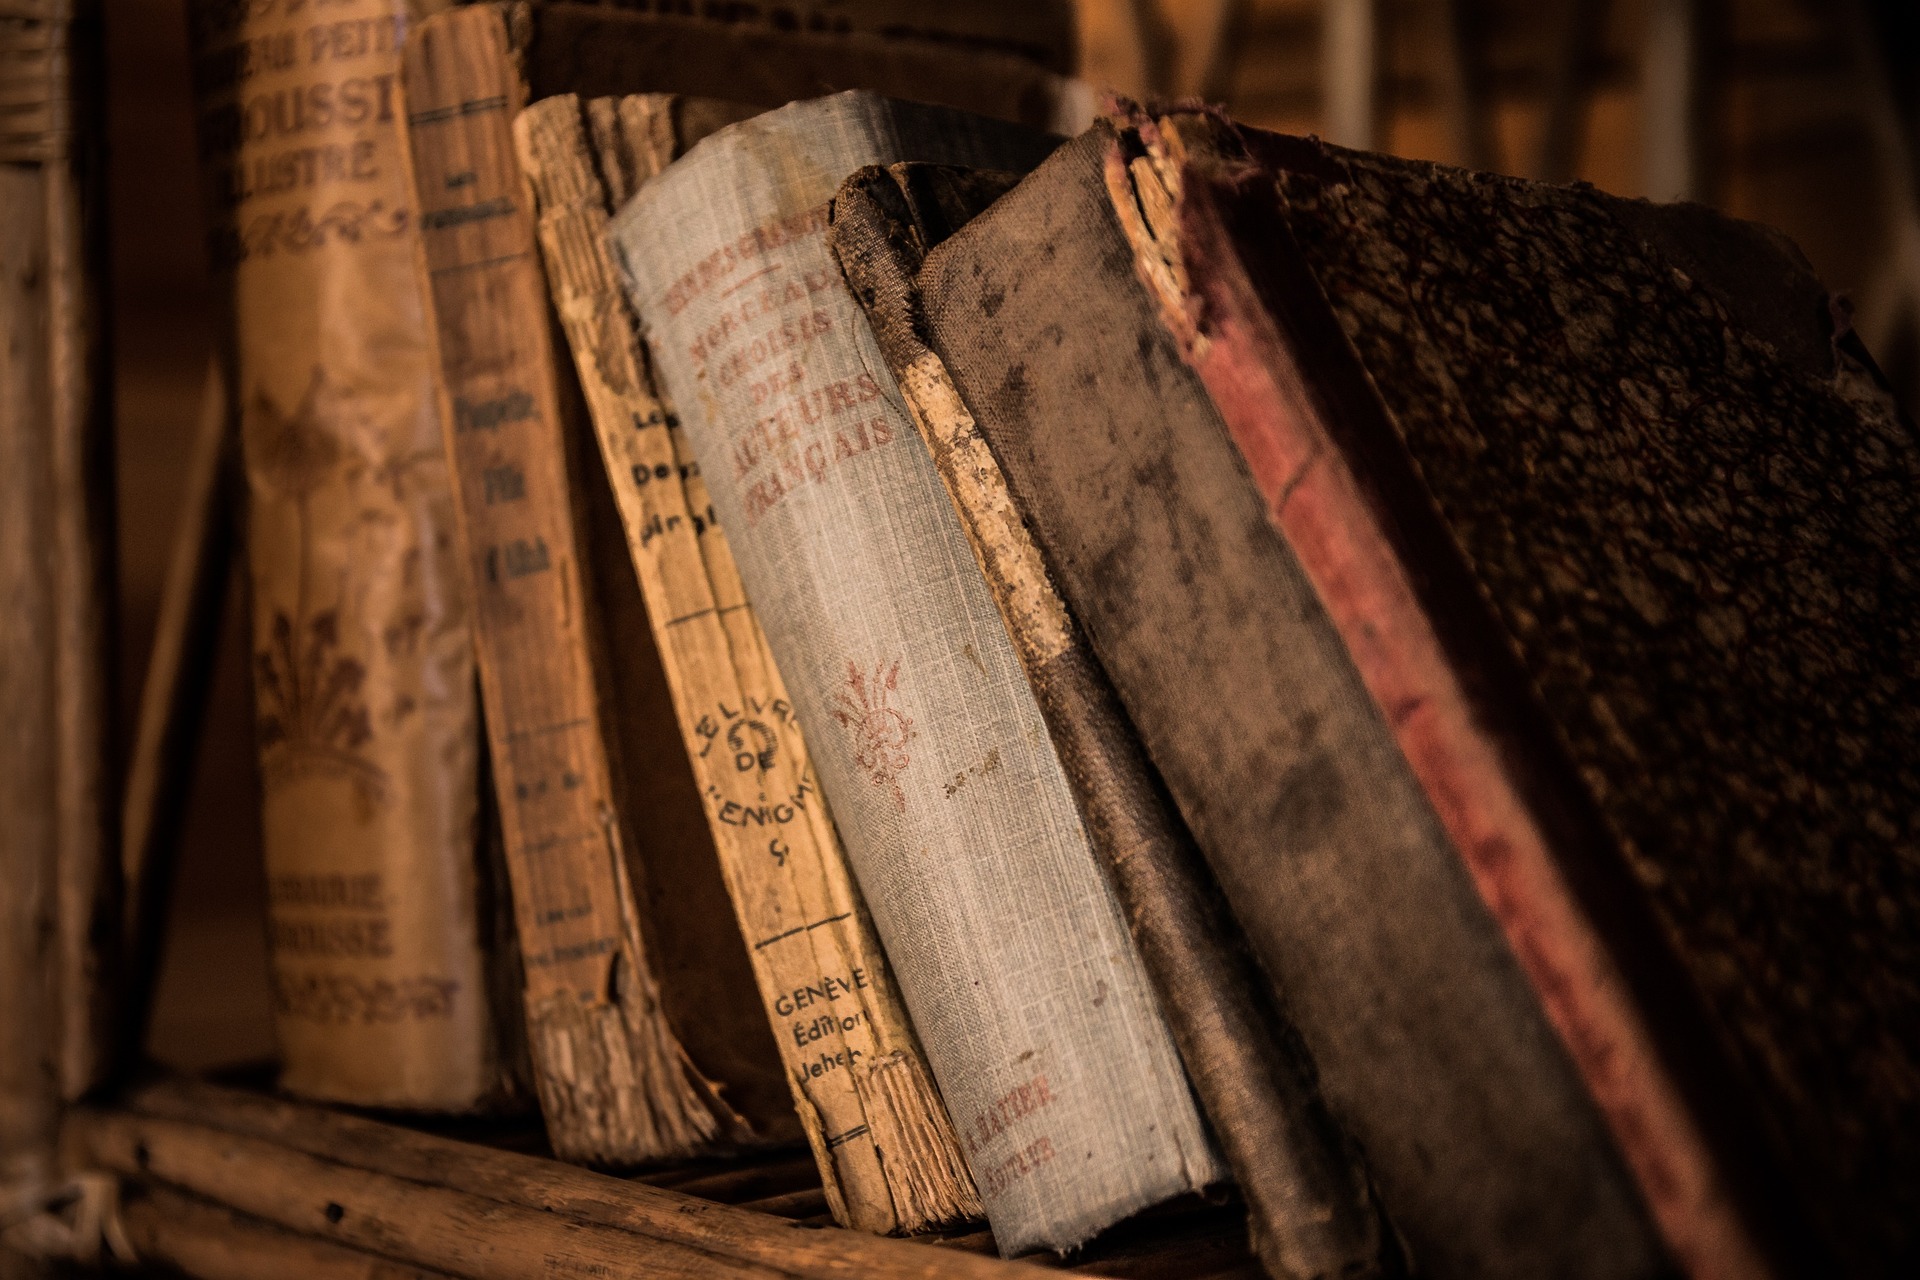 A short shelf of antique books